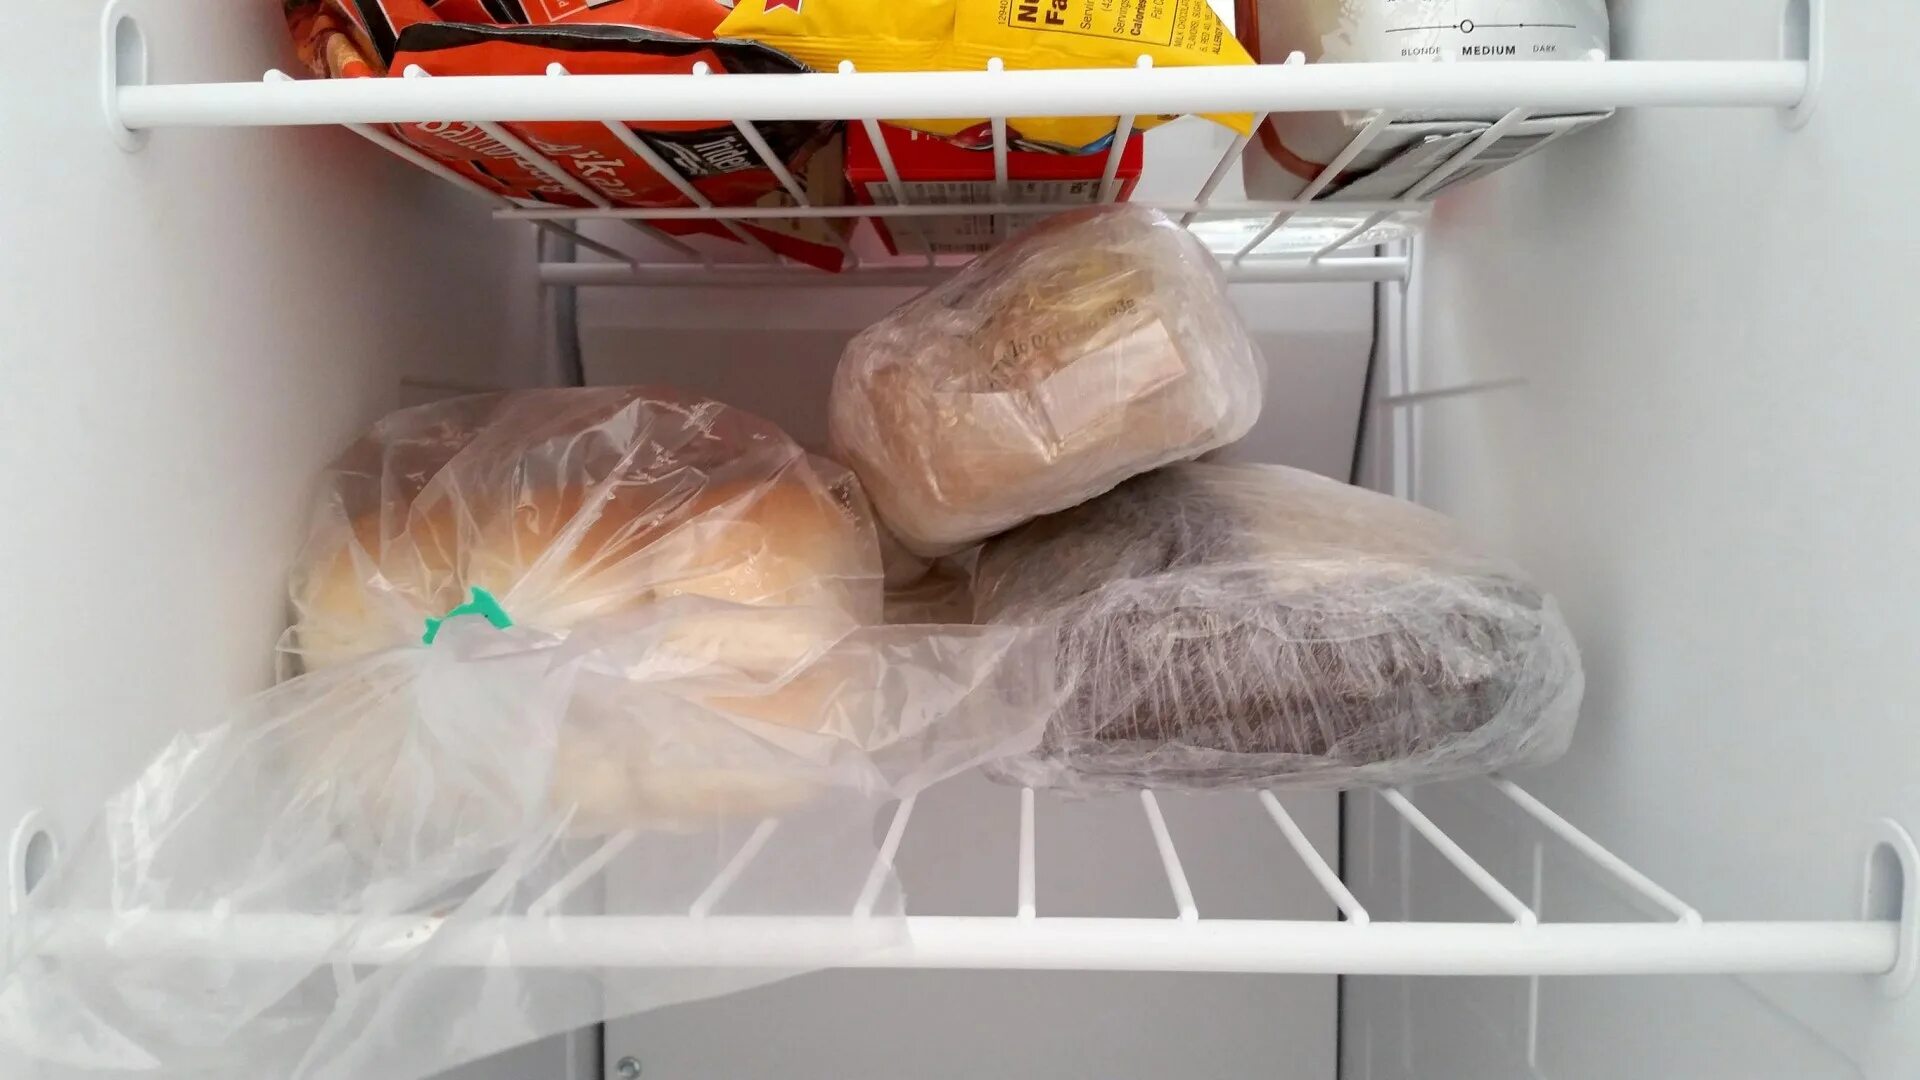 Тесто было в холодильнике. Хлеб в холодильнике. Хранение хлеба в холодильнике. Заморозка хлеба для хранения. Хлеб в пакете в холодильнике.